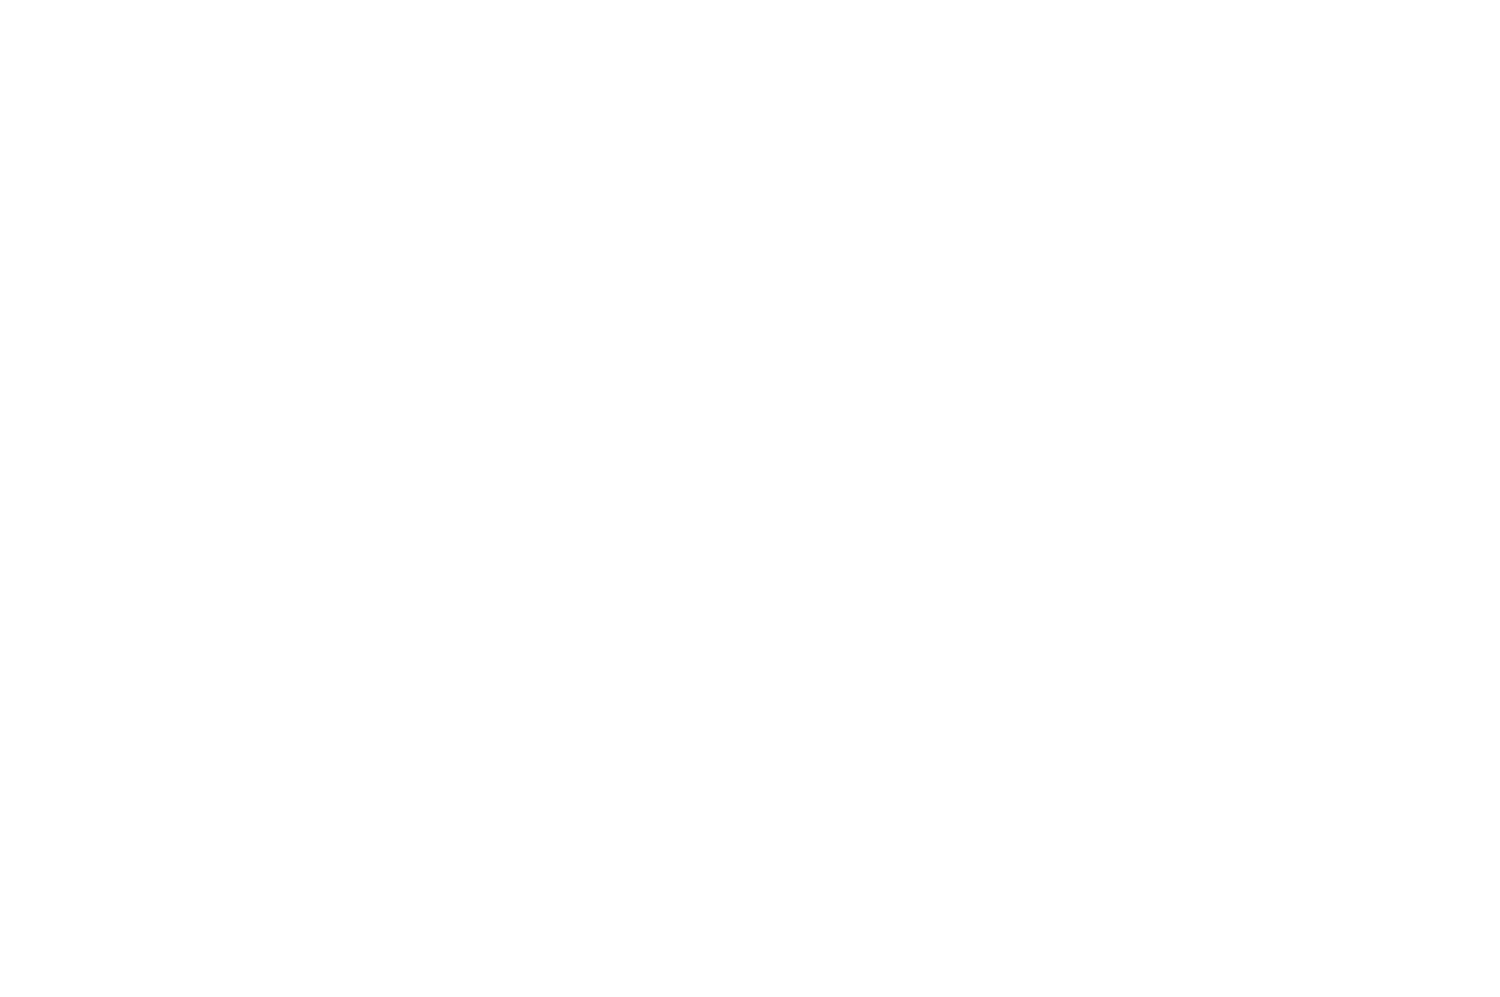 Flip The Vote